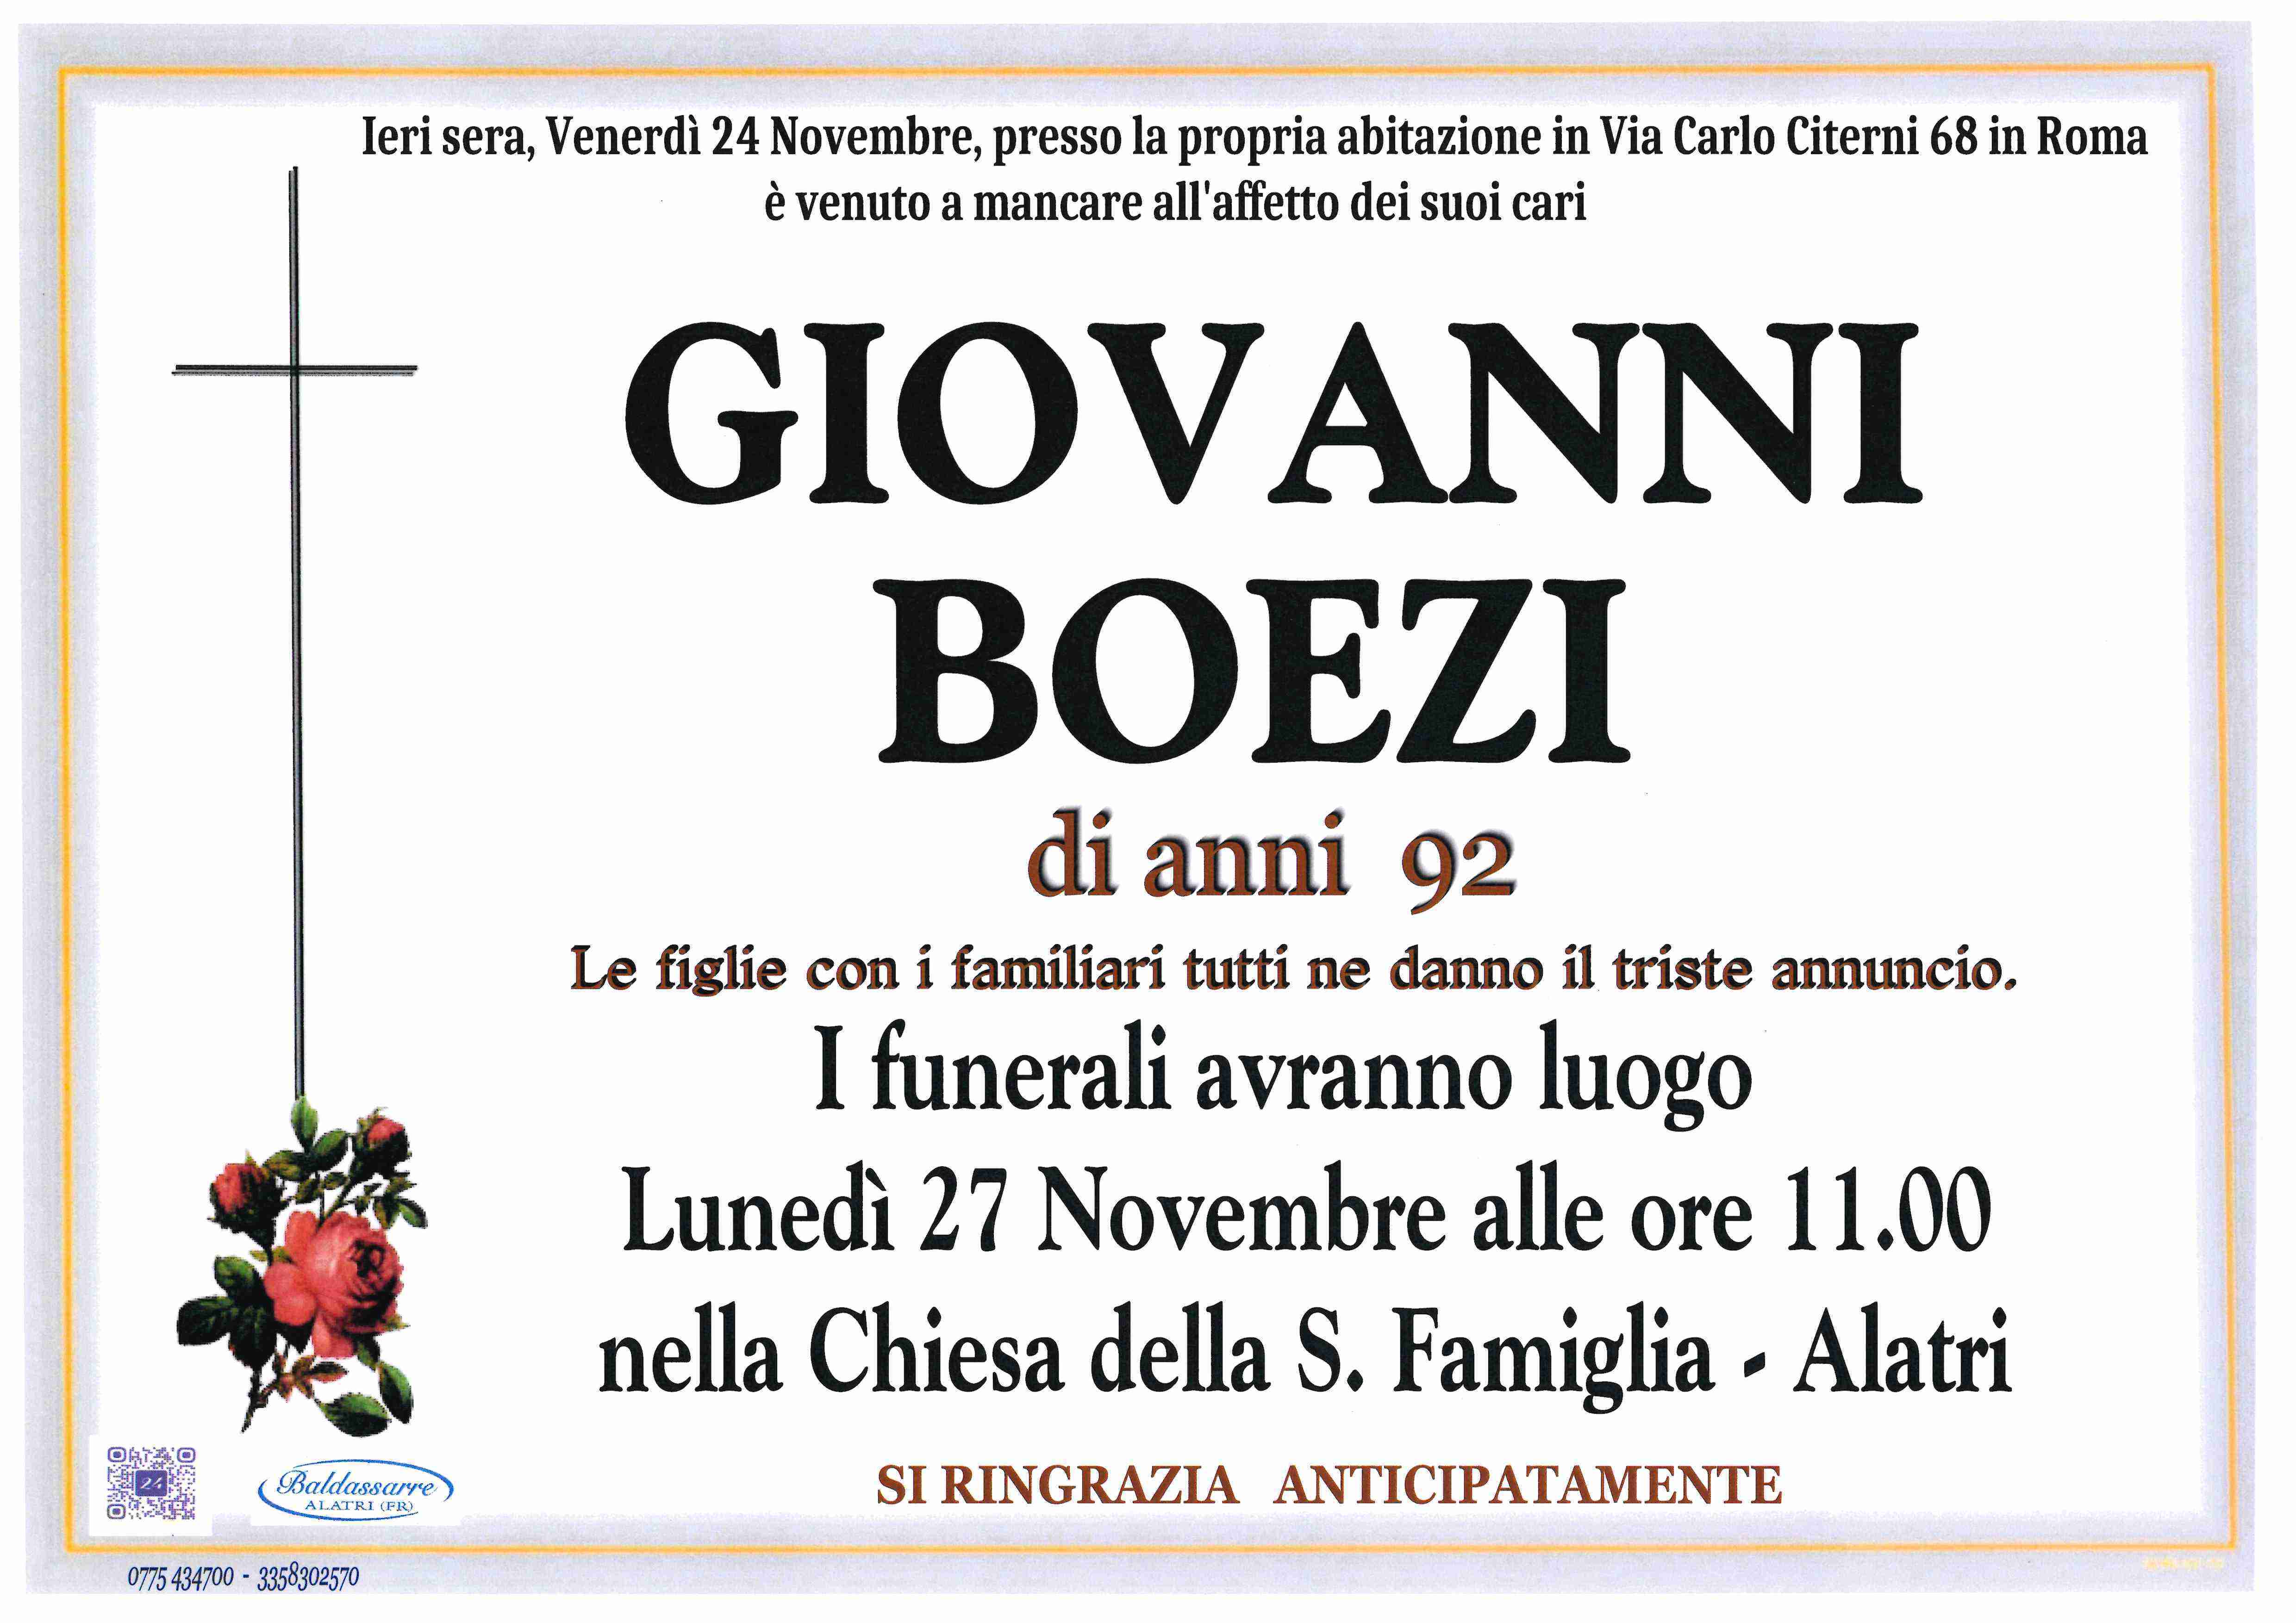 Giovanni Boezi